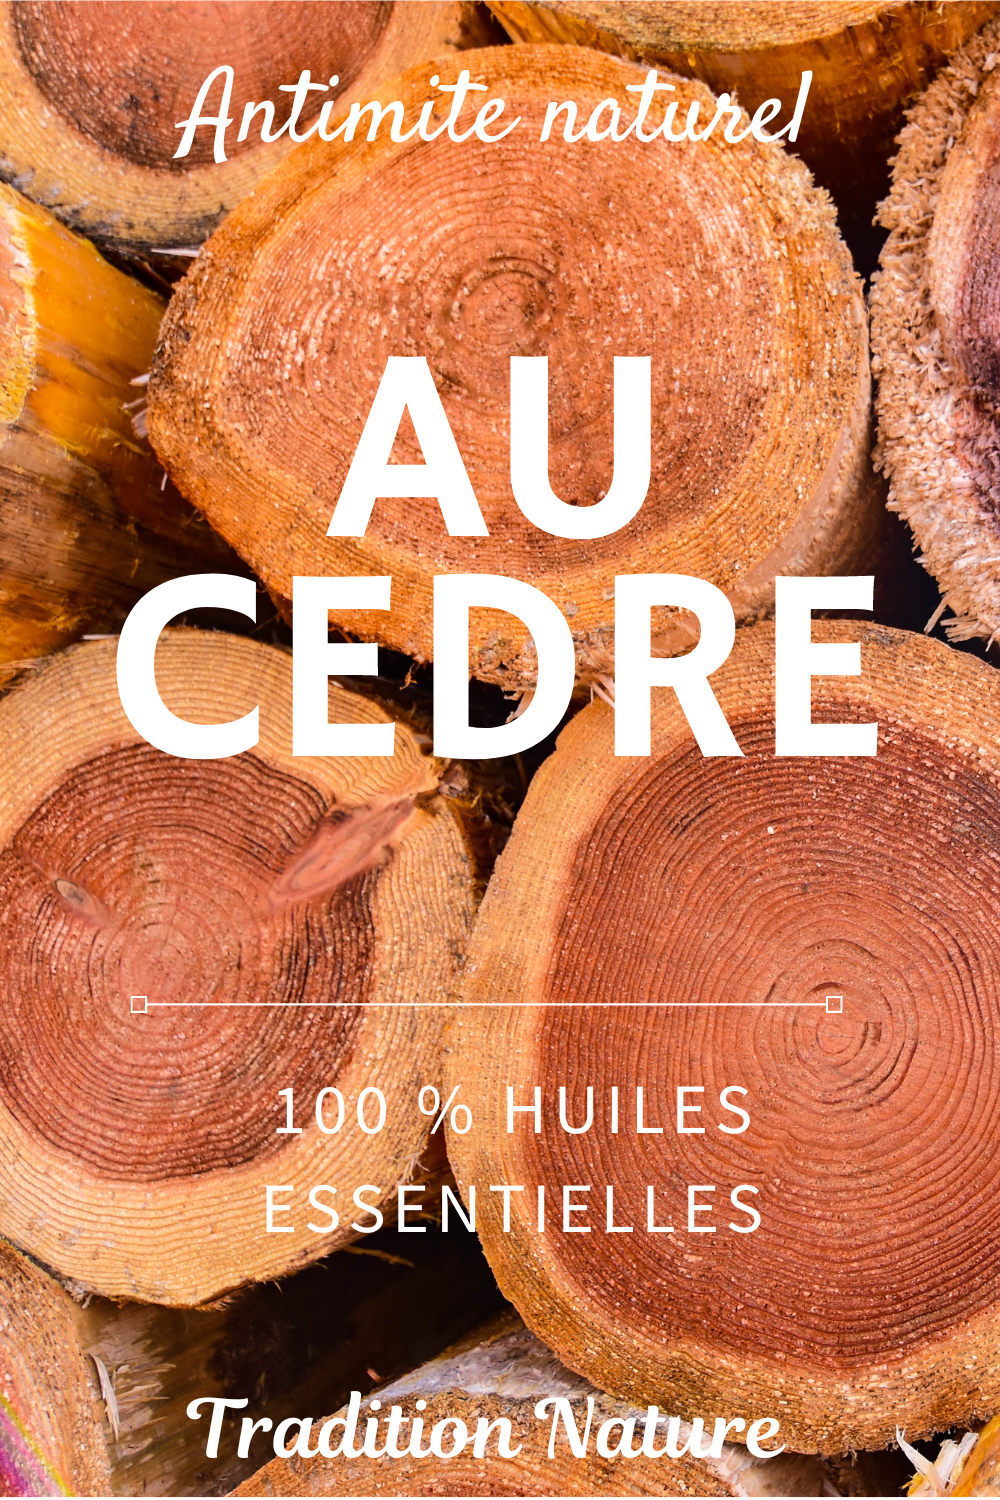 Huile essentielle : le bois de cèdre, un anti mites naturel